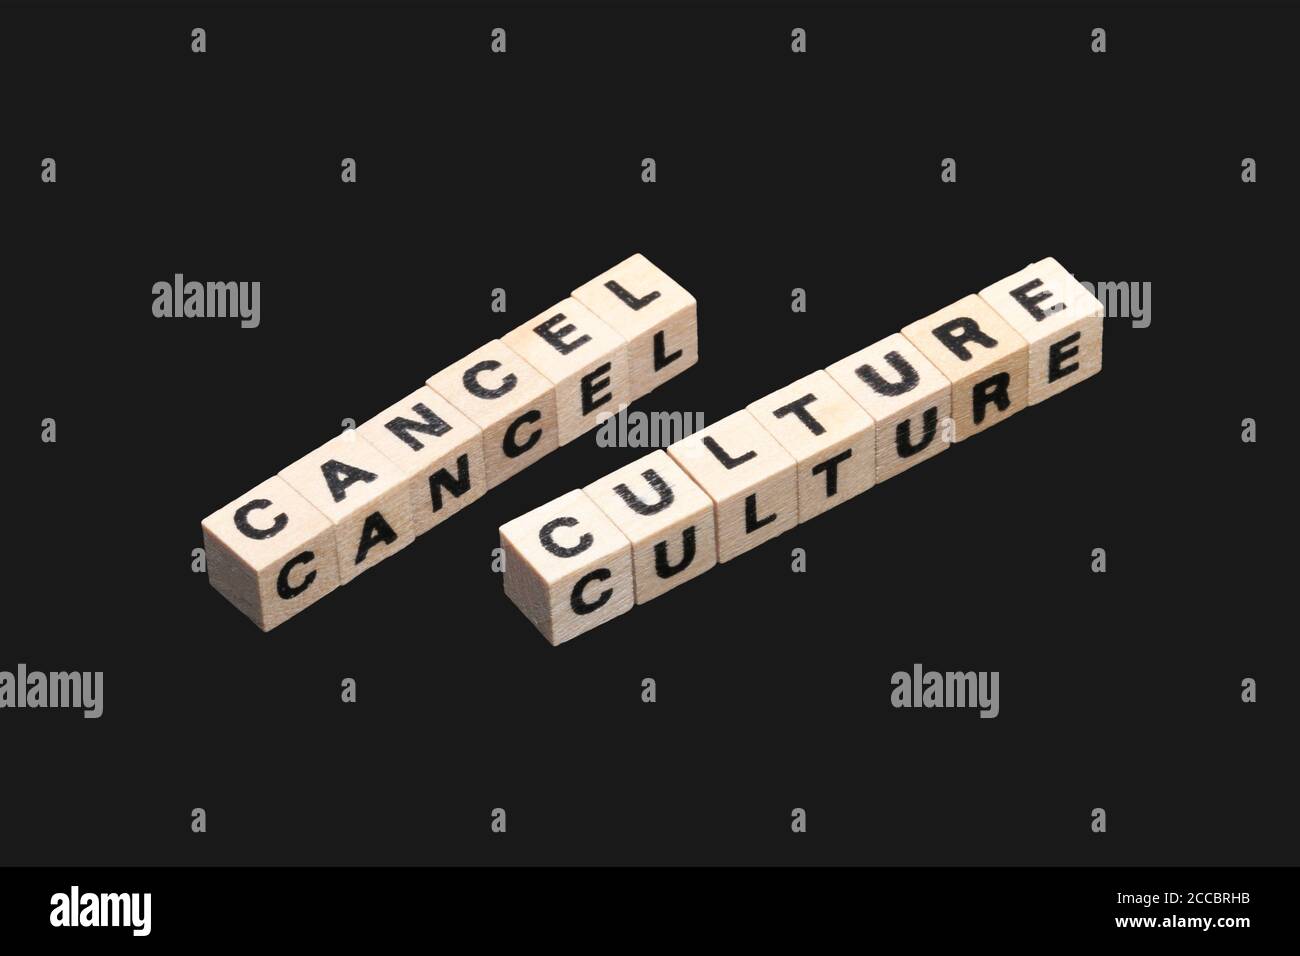 Image symbolique pour le débat sur la soi-disant 'Annuler la culture'. Les cubes de lettres affichent les mots Annuler la culture sur fond noir Banque D'Images